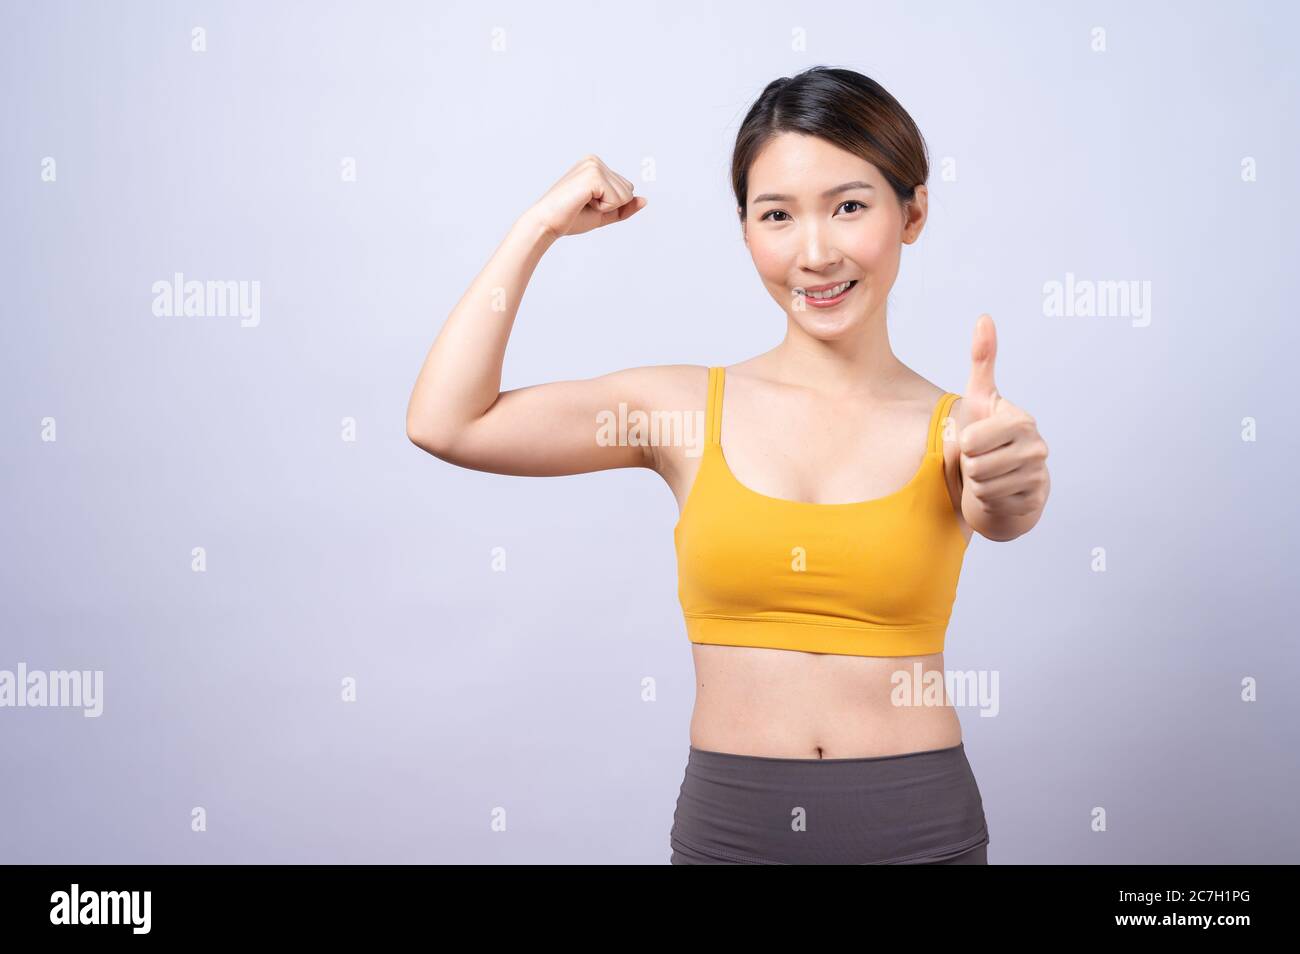 Ritratto di donna asiatica sportiva dando pollice su isolato su sfondo bianco. Concetto di stile di vita sano Foto Stock